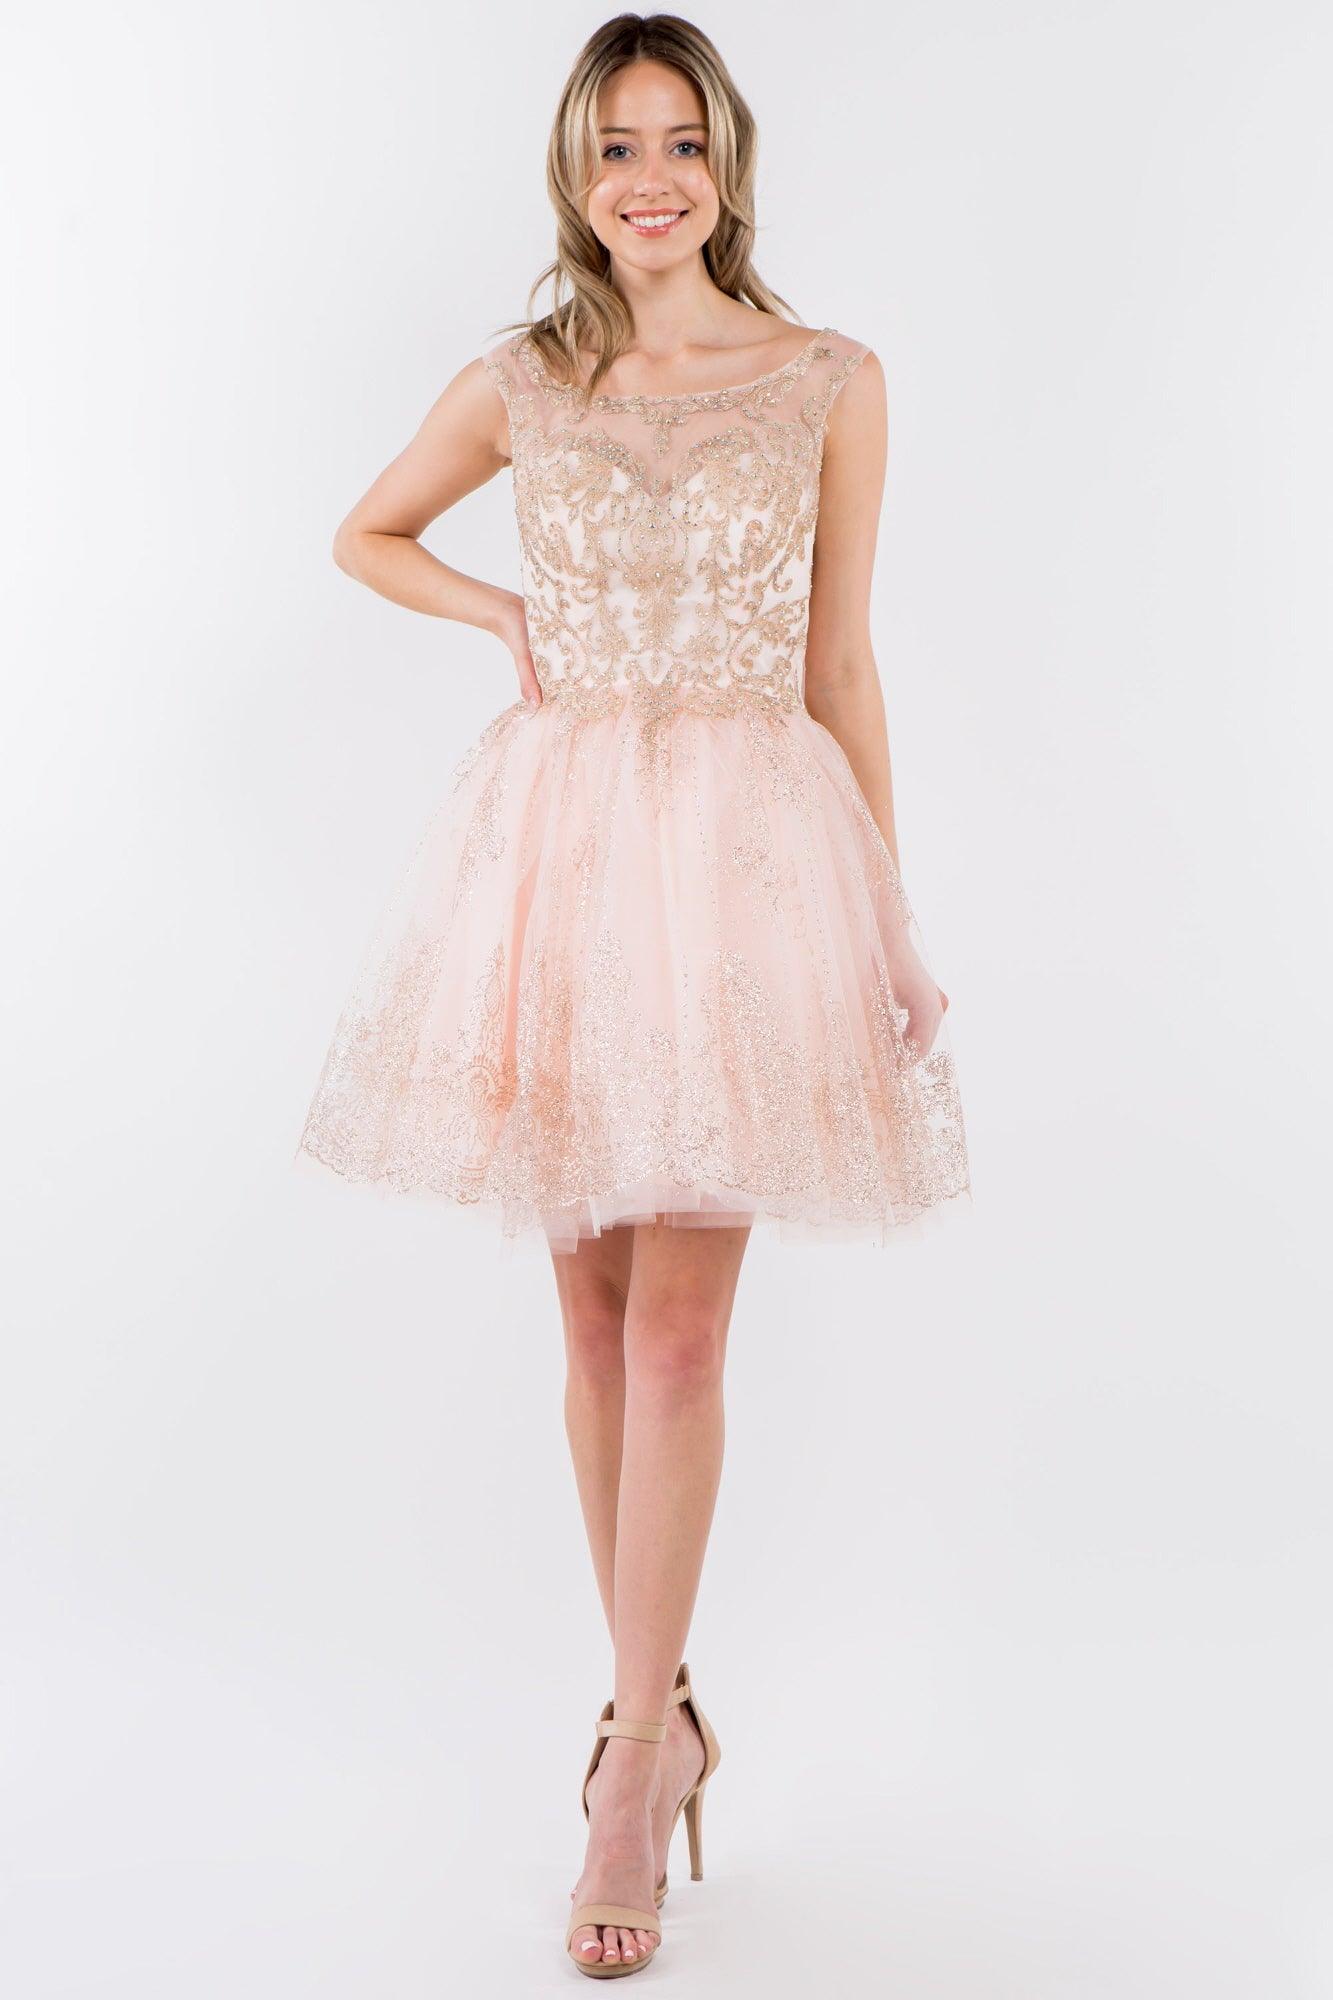 Sleeveless Glitter Short A Line Dress - The Dress Outlet